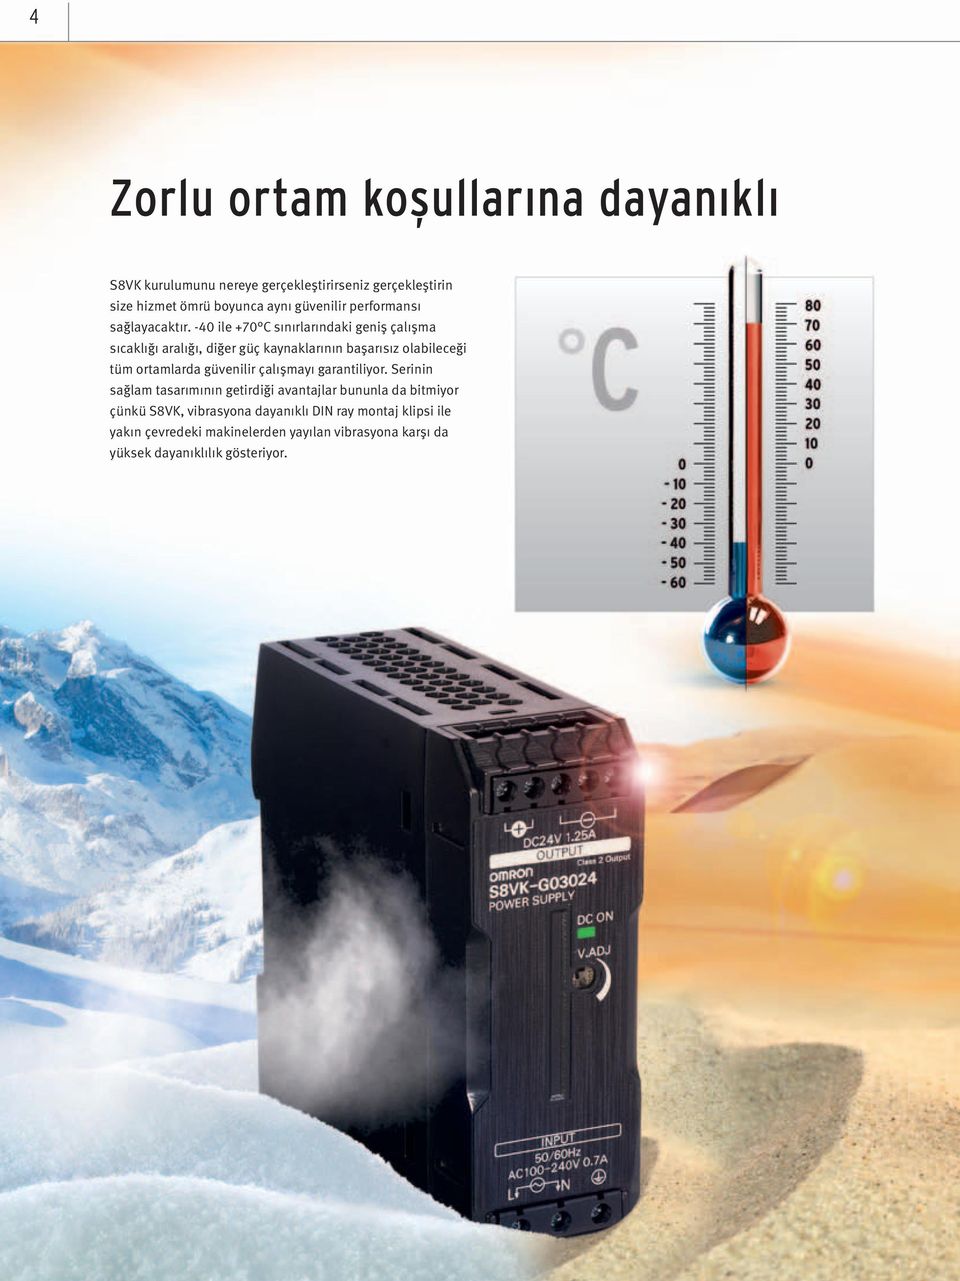 -40 ile +70 C sınırlarındaki geniş çalışma sıcaklığı aralığı, diğer güç kaynaklarının başarısız olabileceği tüm ortamlarda güvenilir